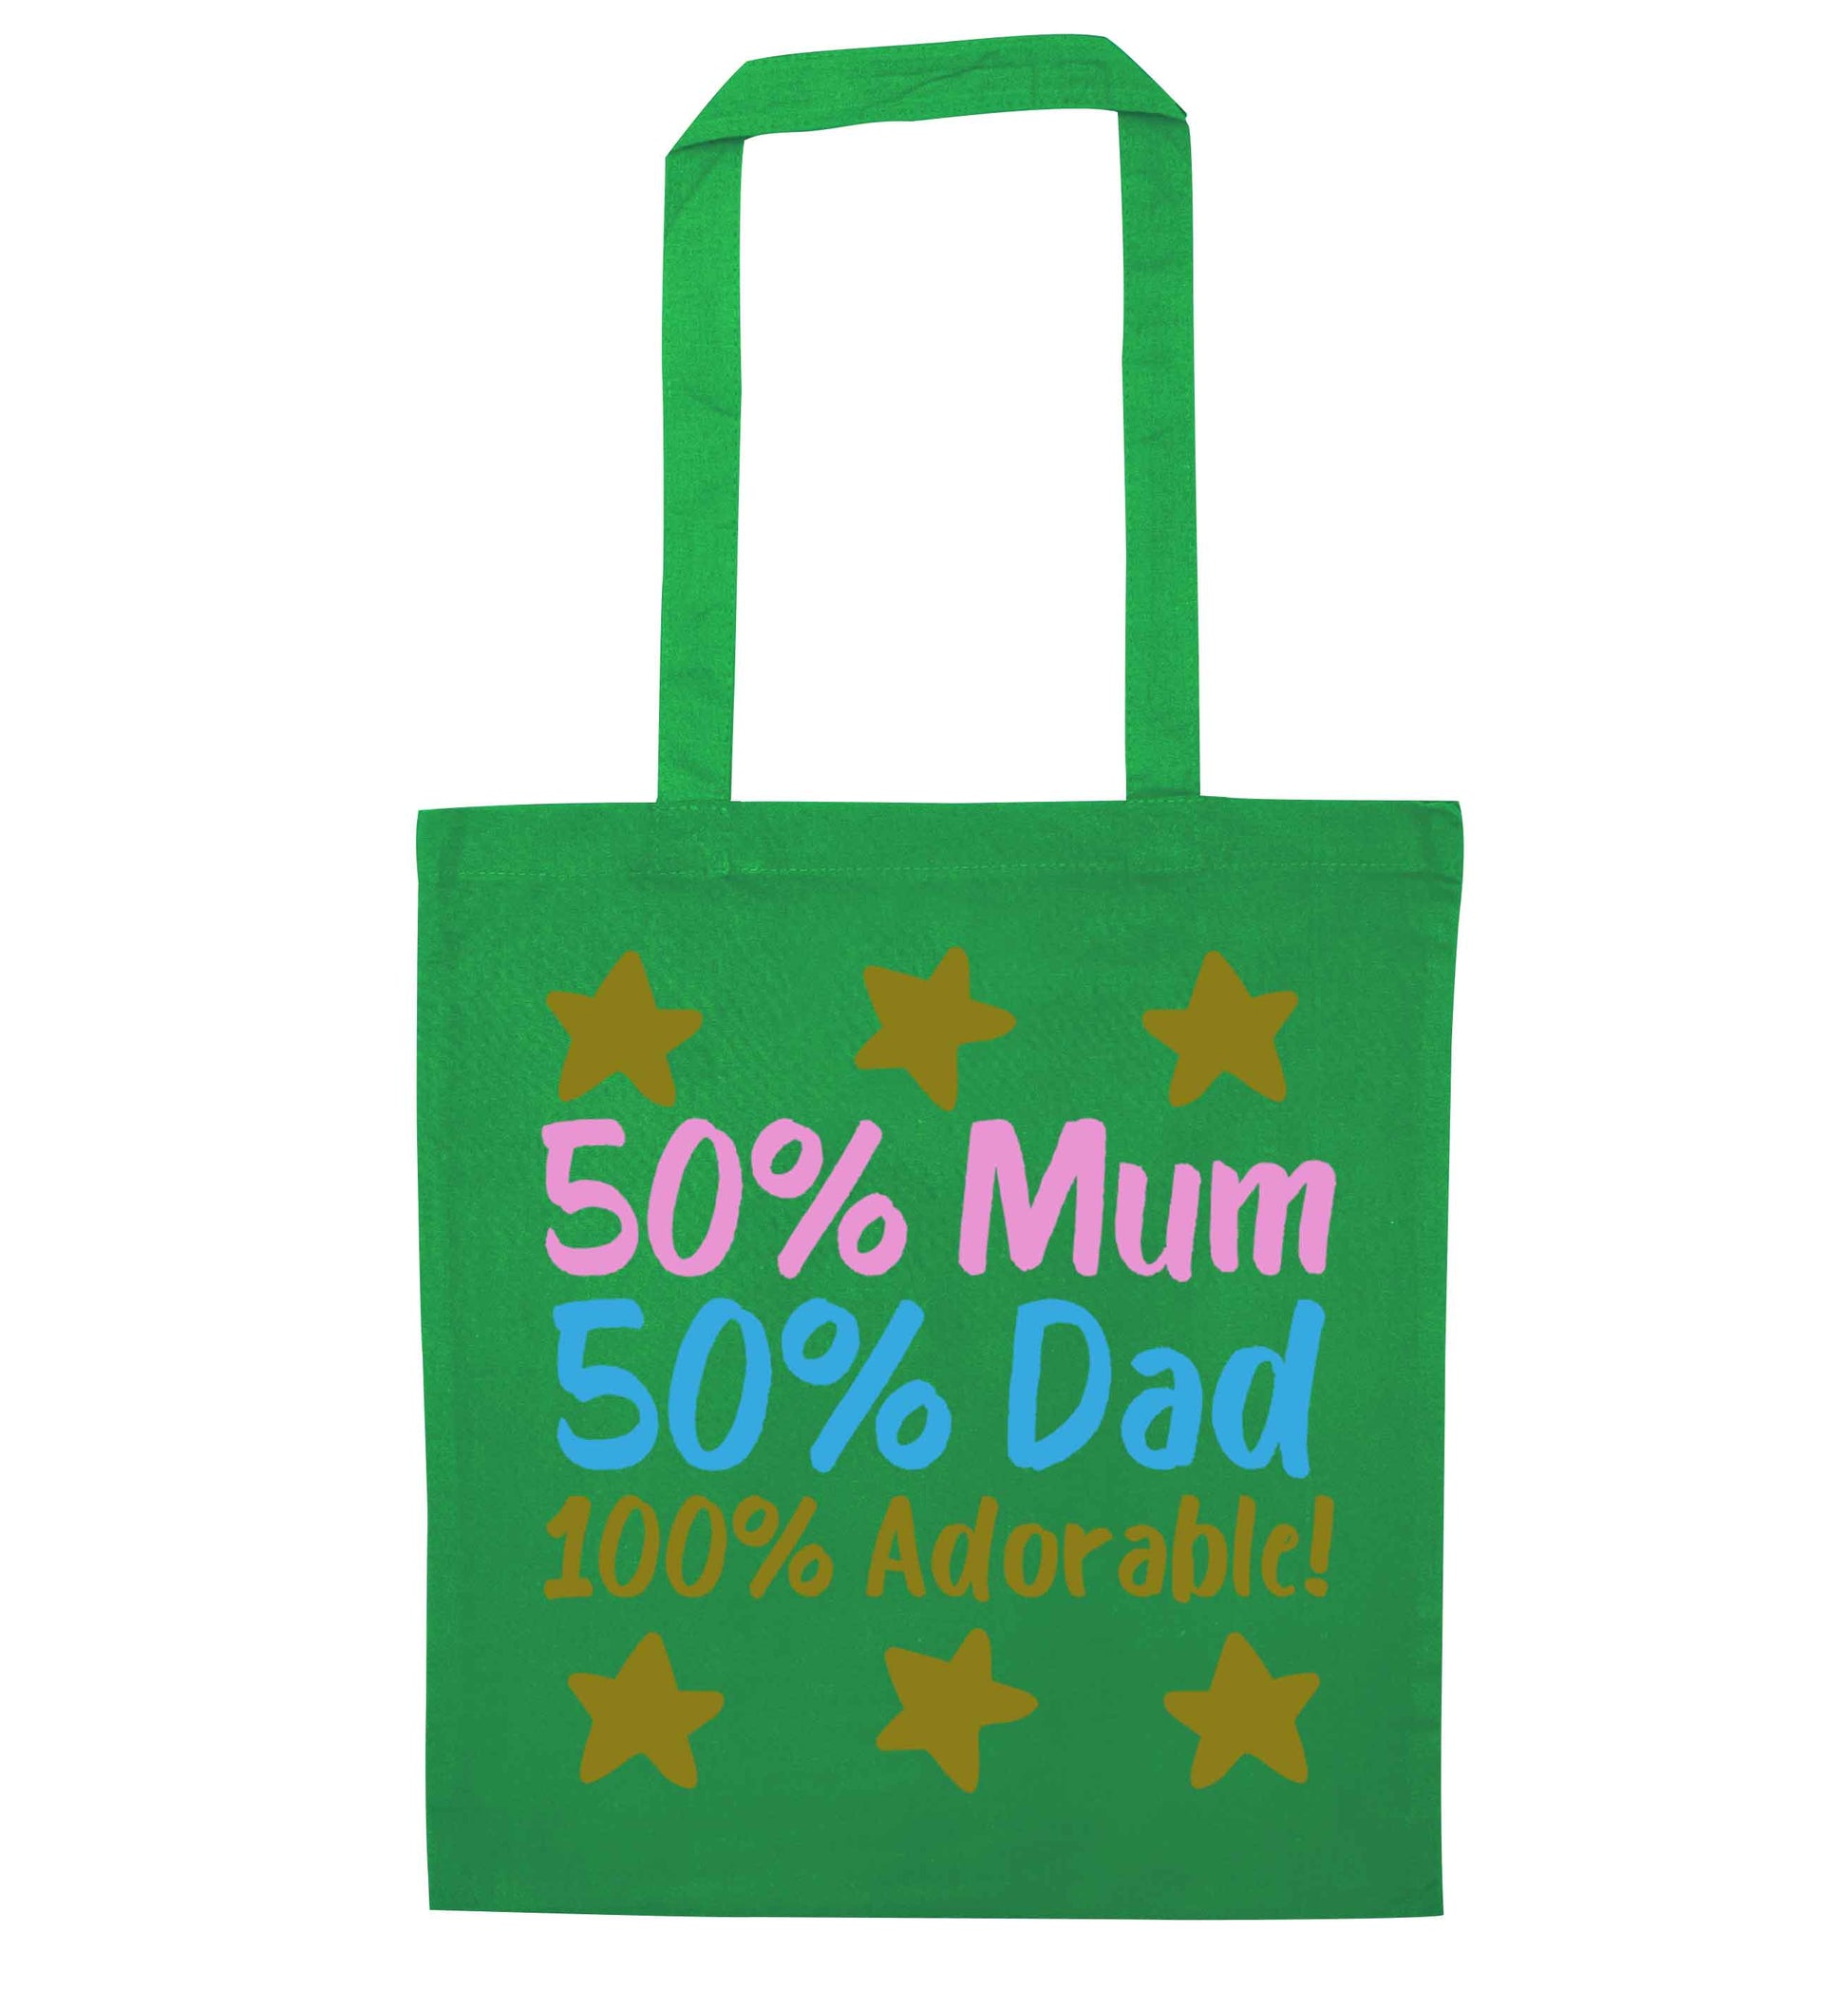 50% mum 50% dad 100% adorable green tote bag